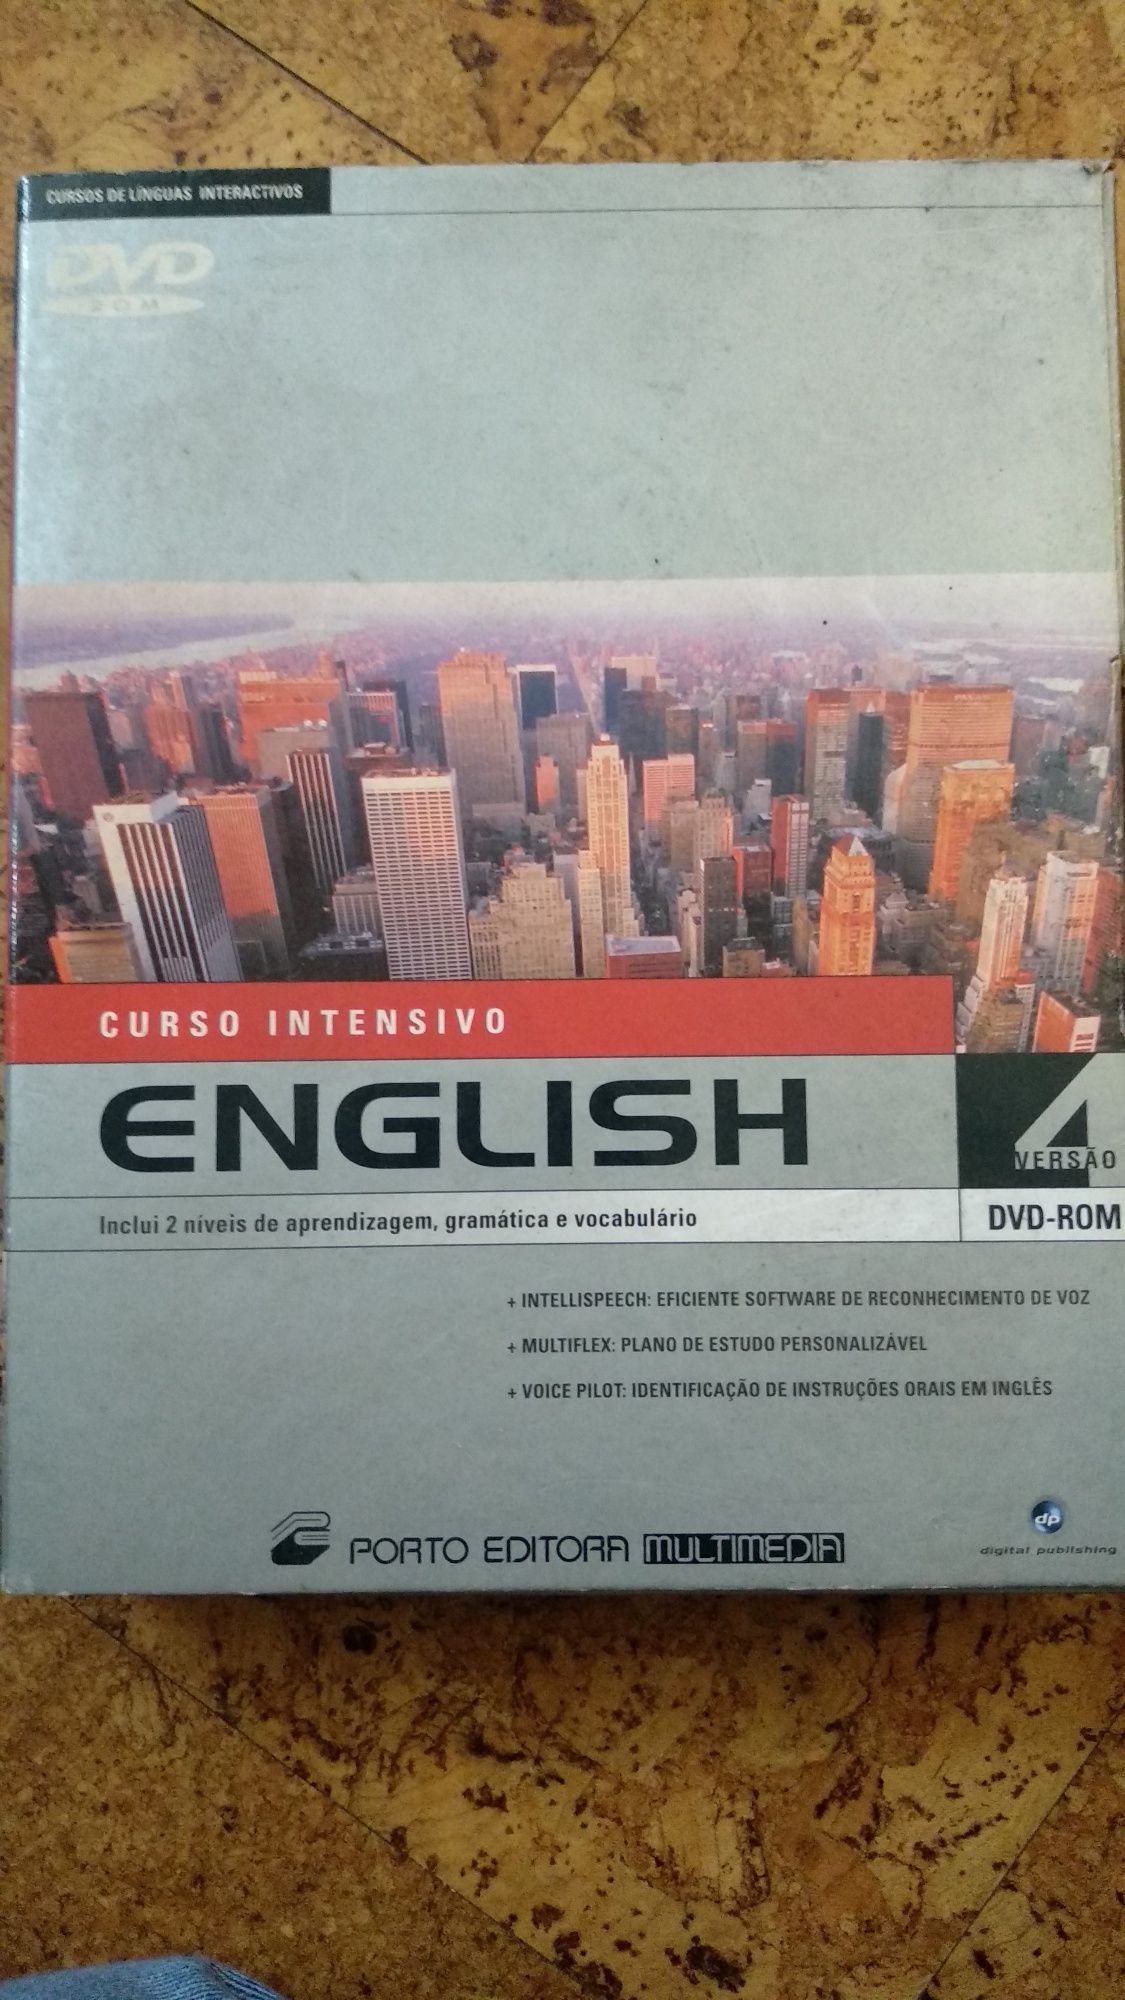 Curso intensivo English - versão 4 em DVD-Rom